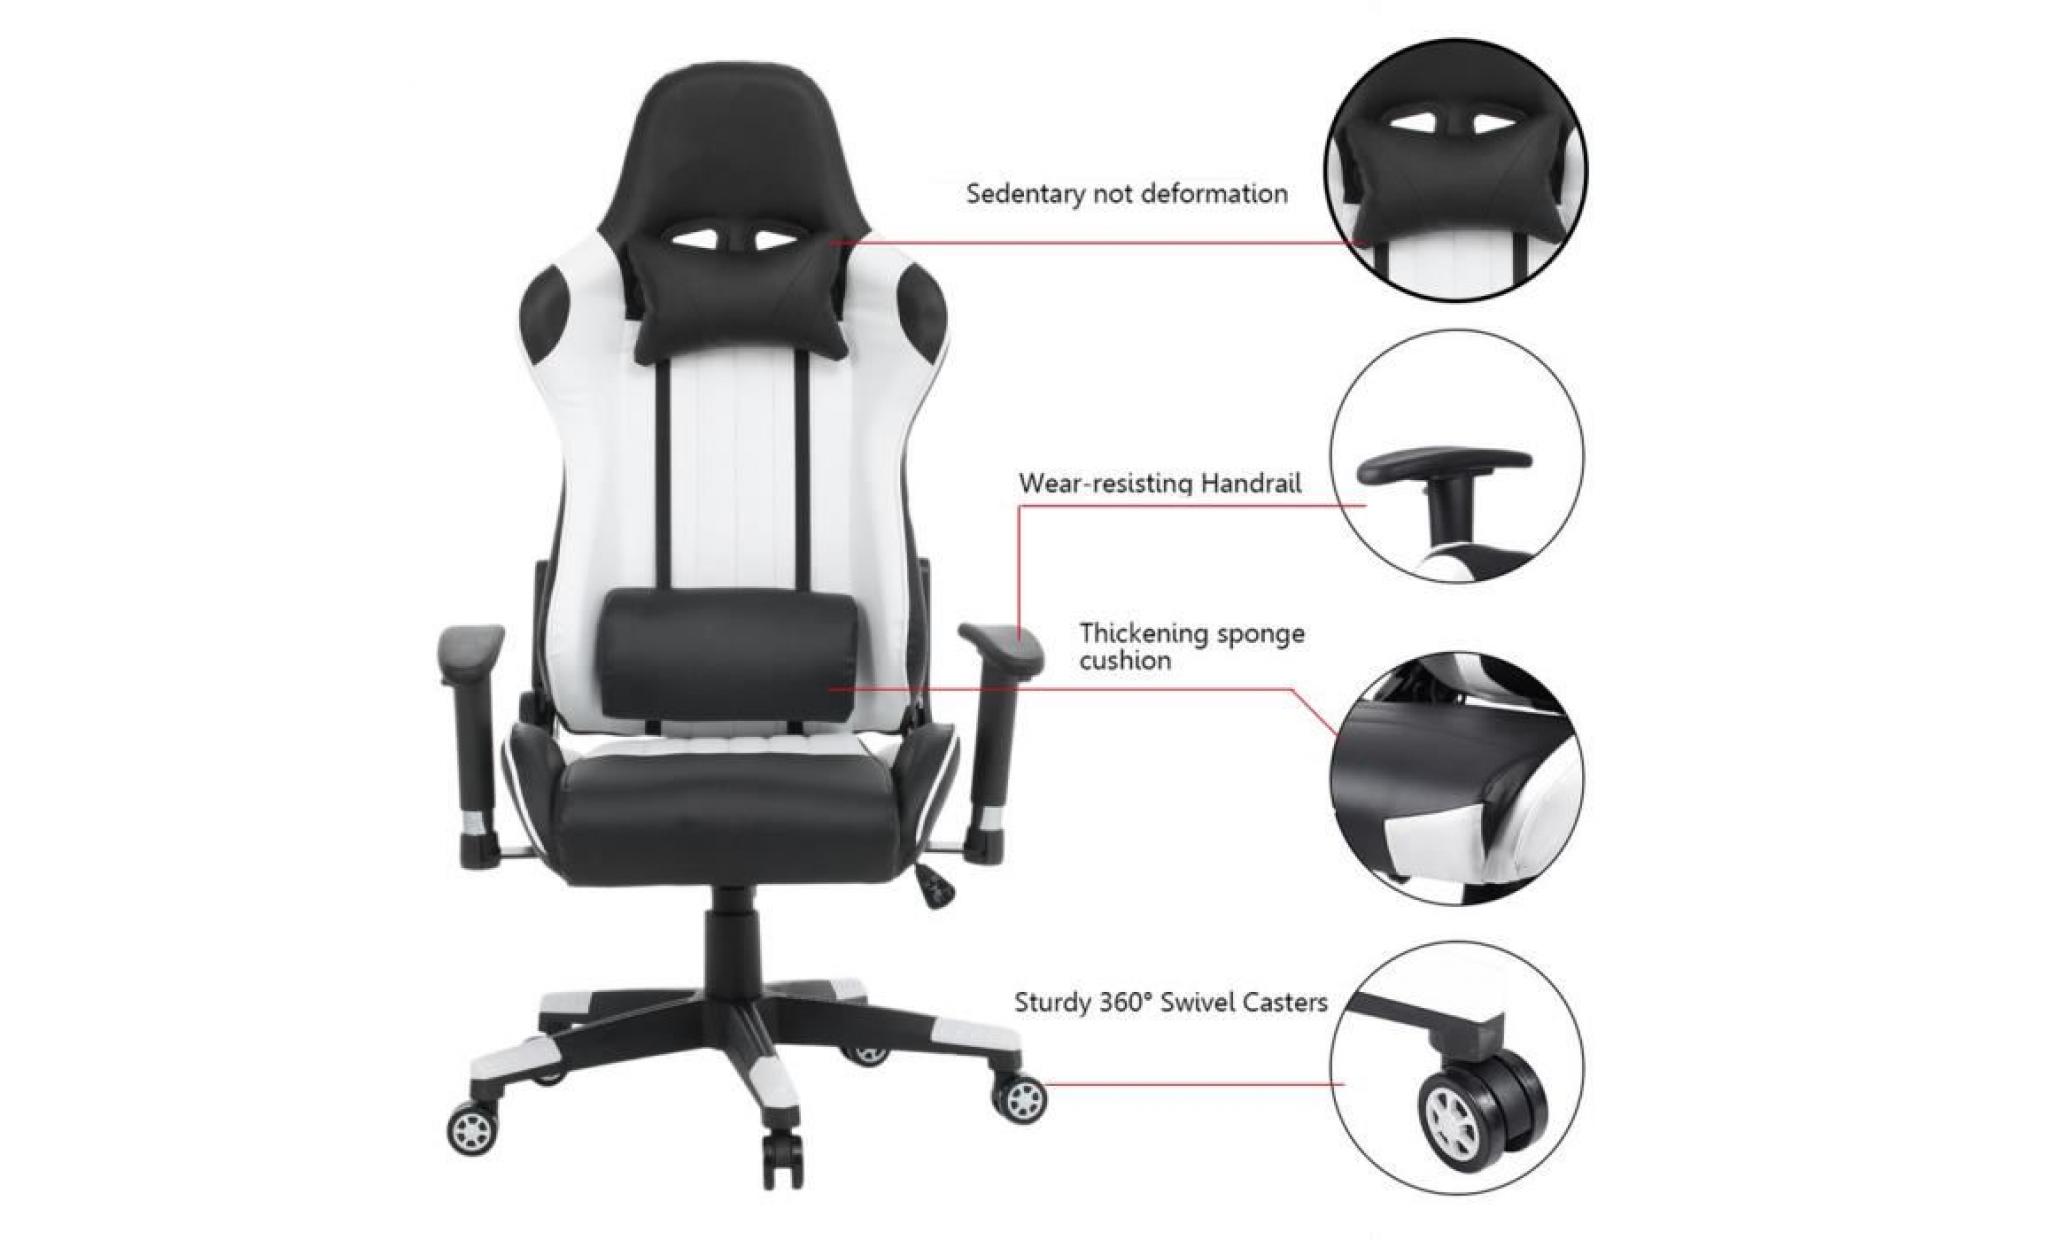 youtubeur gamer chaise pivotante luxe hauteur réglable fauteuil de bureau maison jeu vidéo